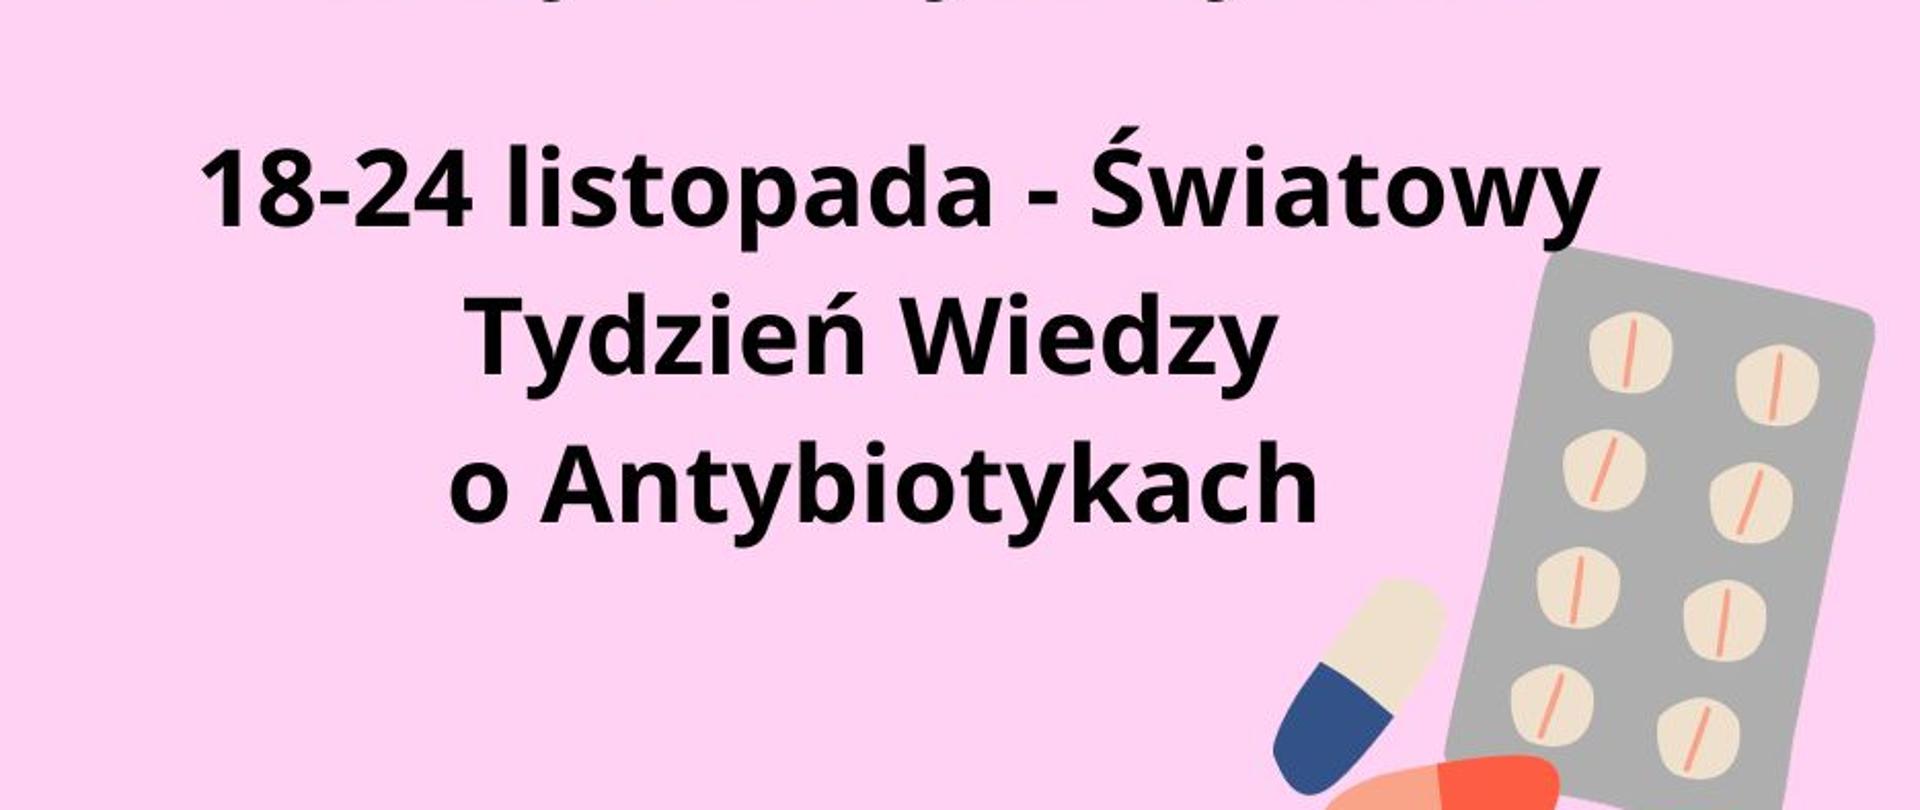 Na różowym tle znajduje się napis Europejski Dzień Wiedzy o Antybiotykach i Światowy Tydzień Wiedzy o Antybiotykach oraz grafika blistra tabletek.